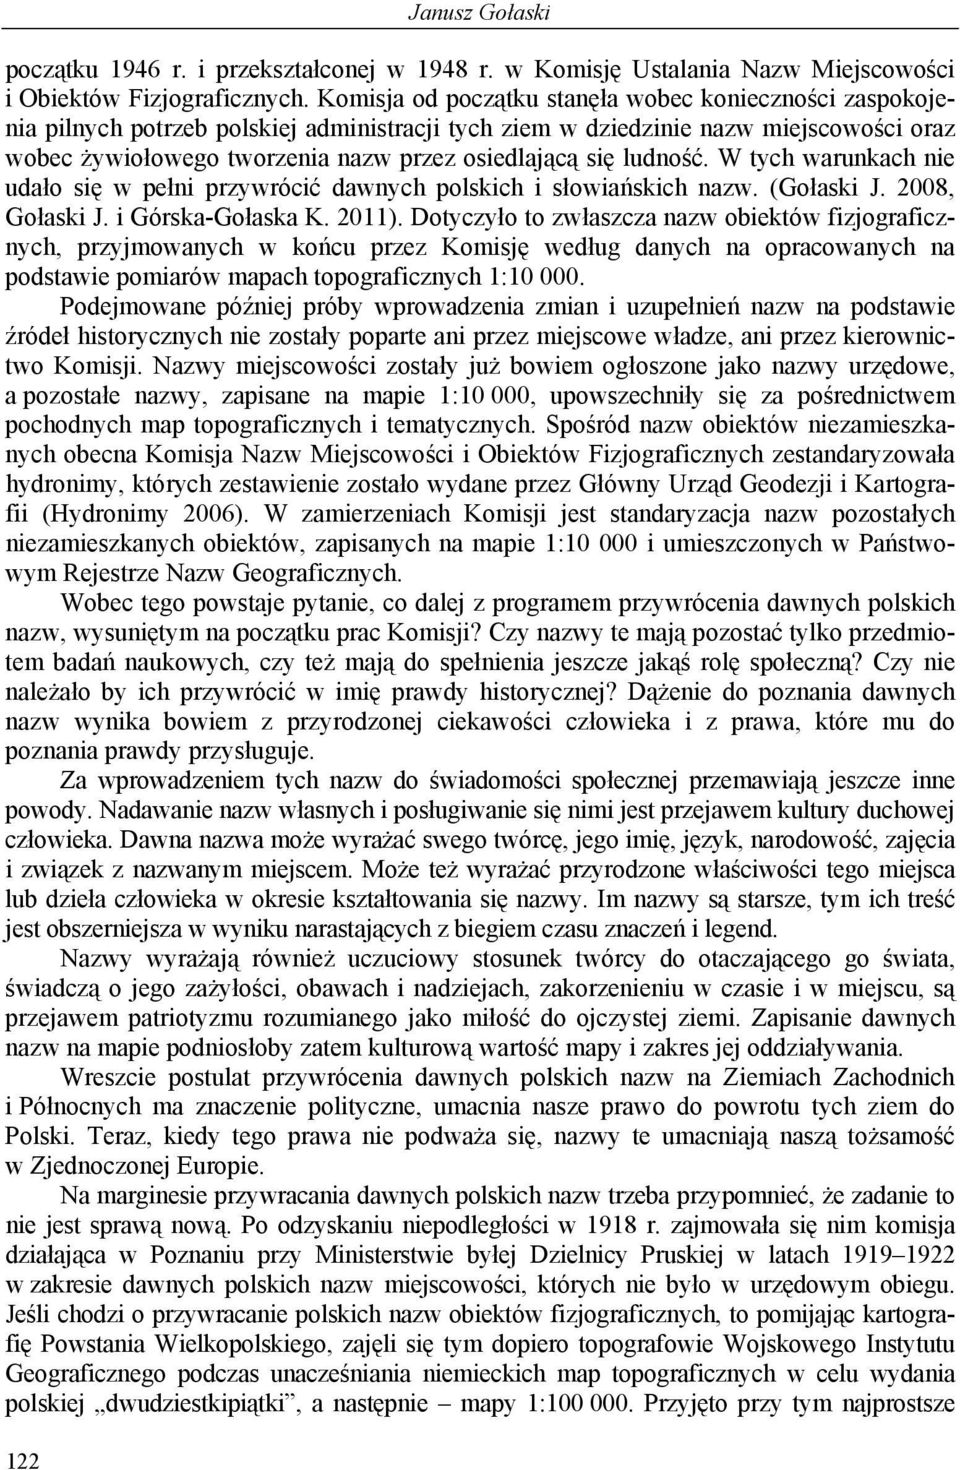 ludność. W tych warunkach nie udało się w pełni przywrócić dawnych polskich i słowiańskich nazw. (Gołaski J. 2008, Gołaski J. i Górska-Gołaska K. 2011).